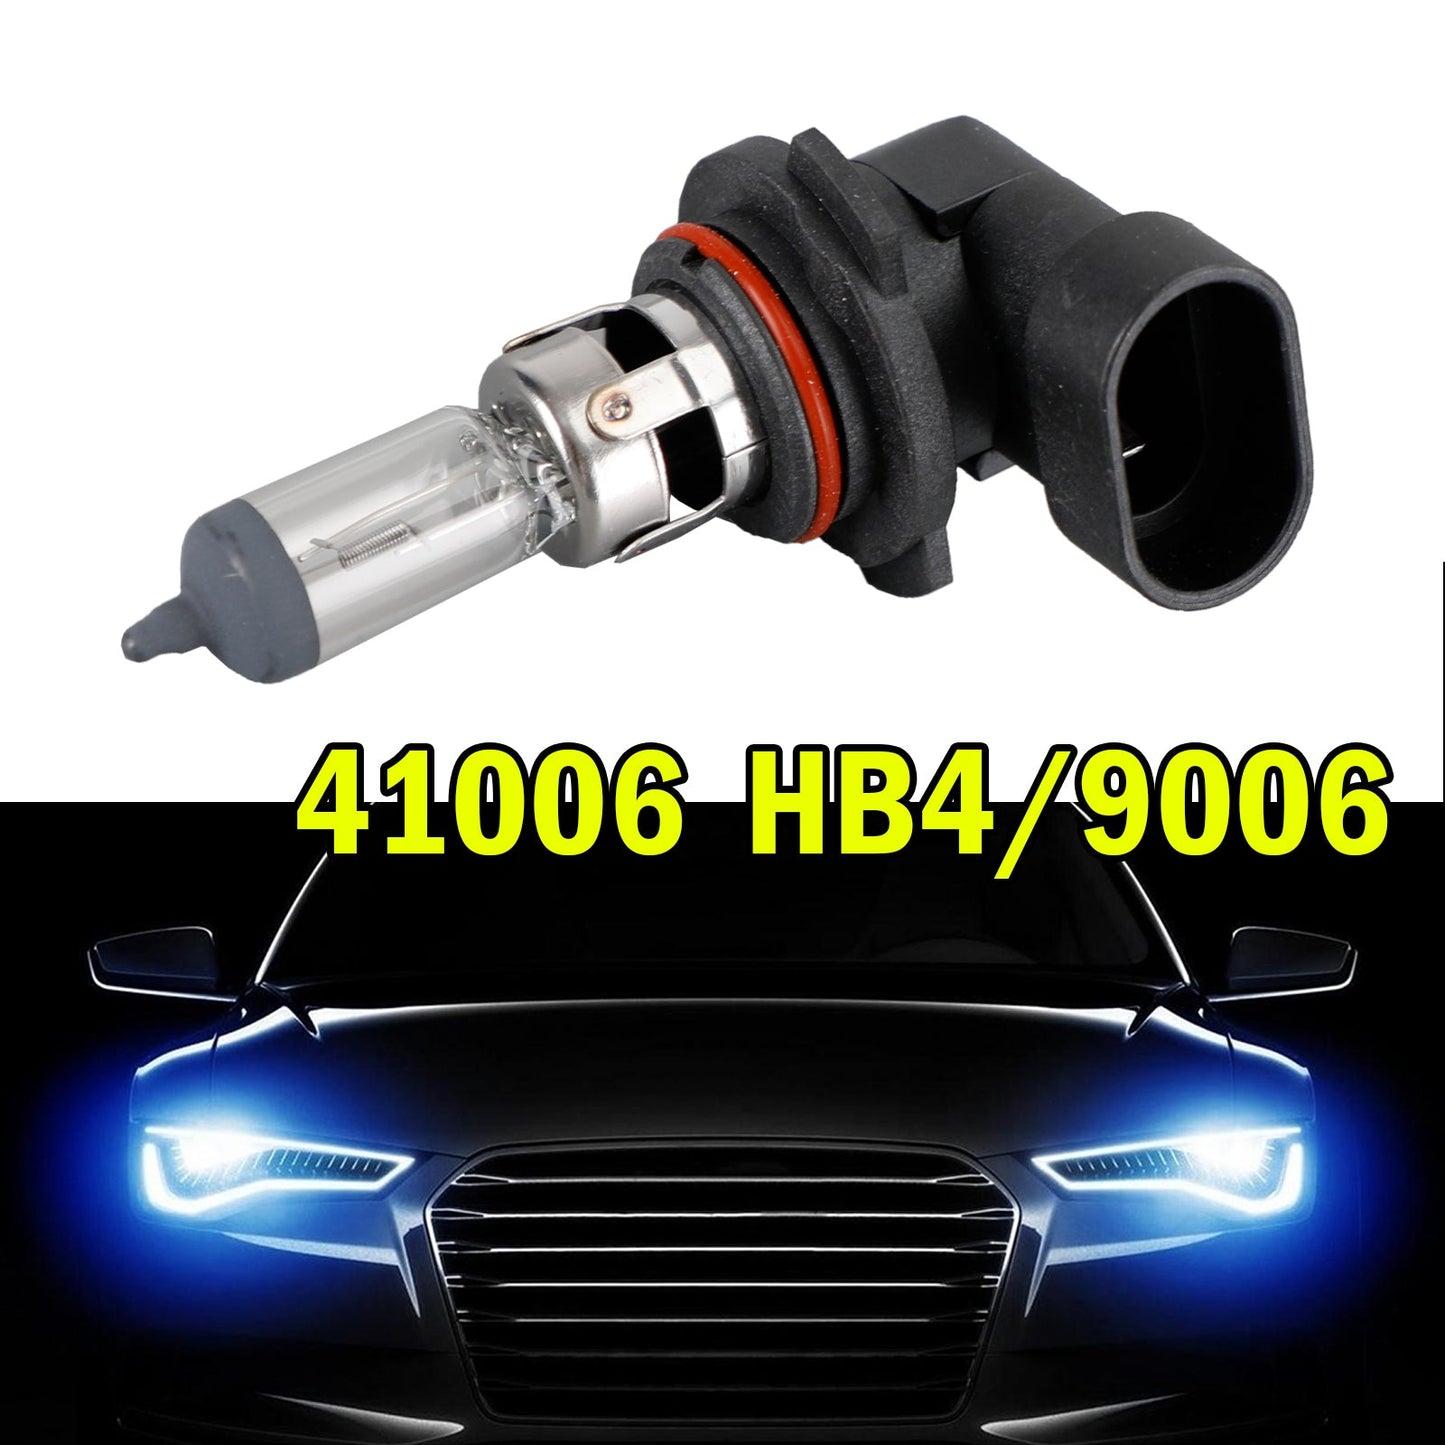 HB4 9006 For NARVA 41006 Halogen Car Headlight Lamp 12V55W P22d DOT